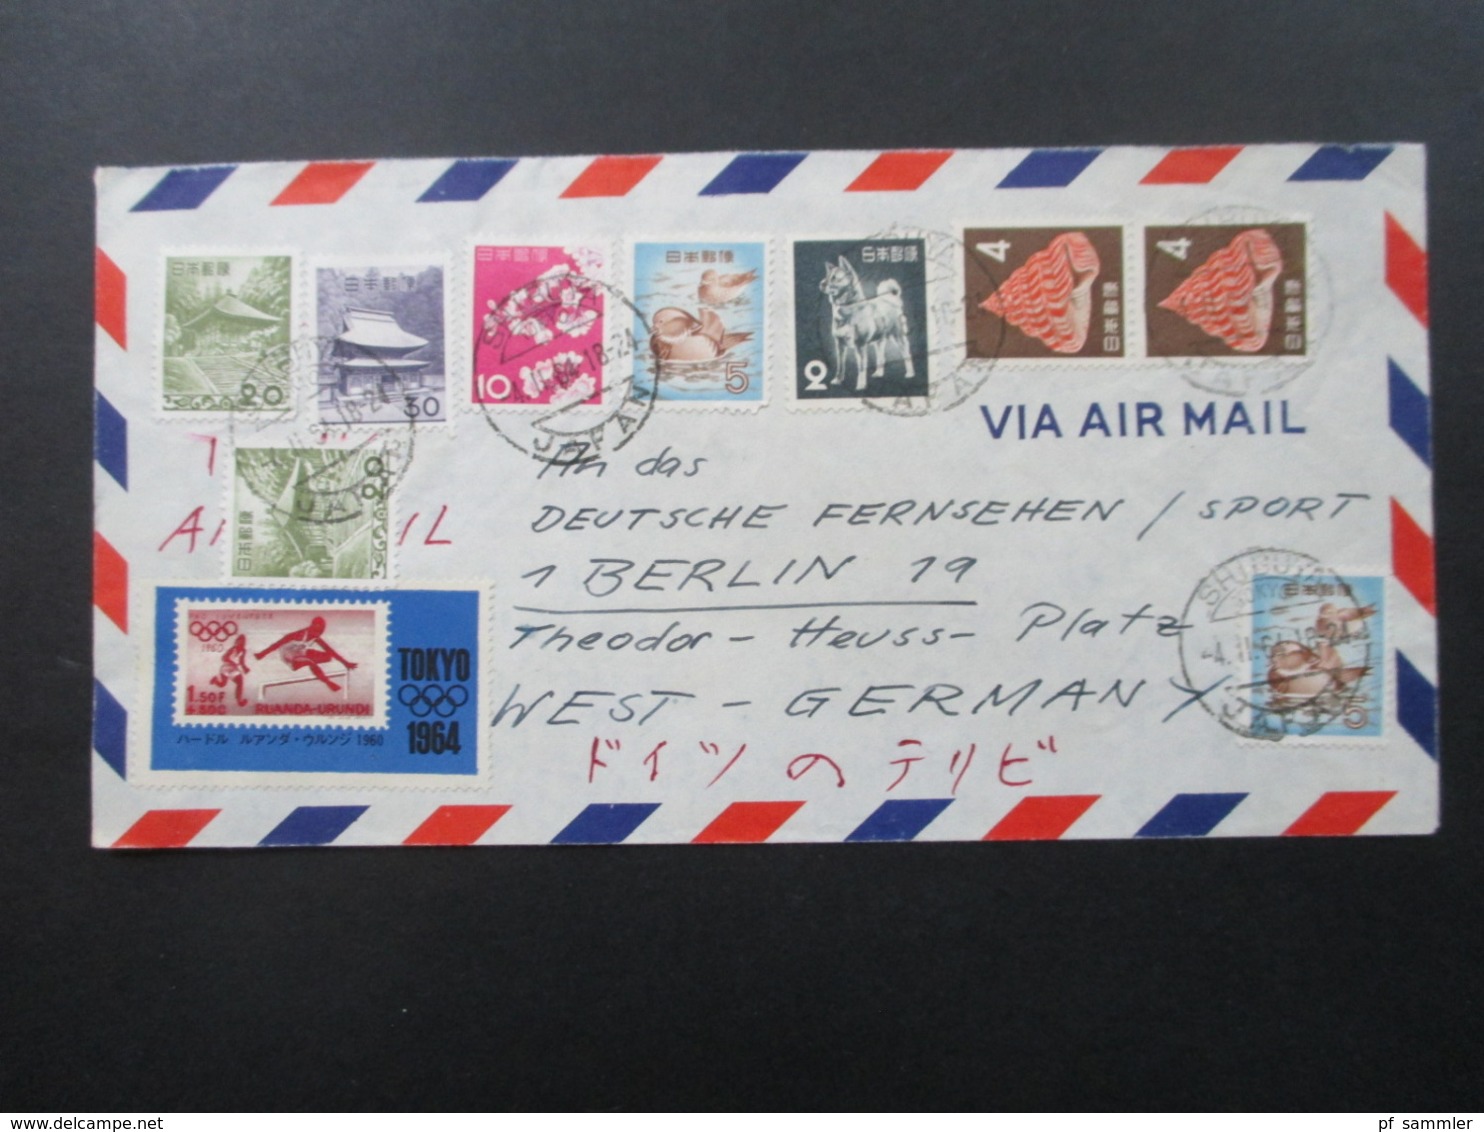 Japan 1964 Luftpostbrief / Via Air Mail Mit 11 Marken Auch Tokyo 1964 An Das Deutsche Fernsehen / Sport In Berlin - Lettres & Documents